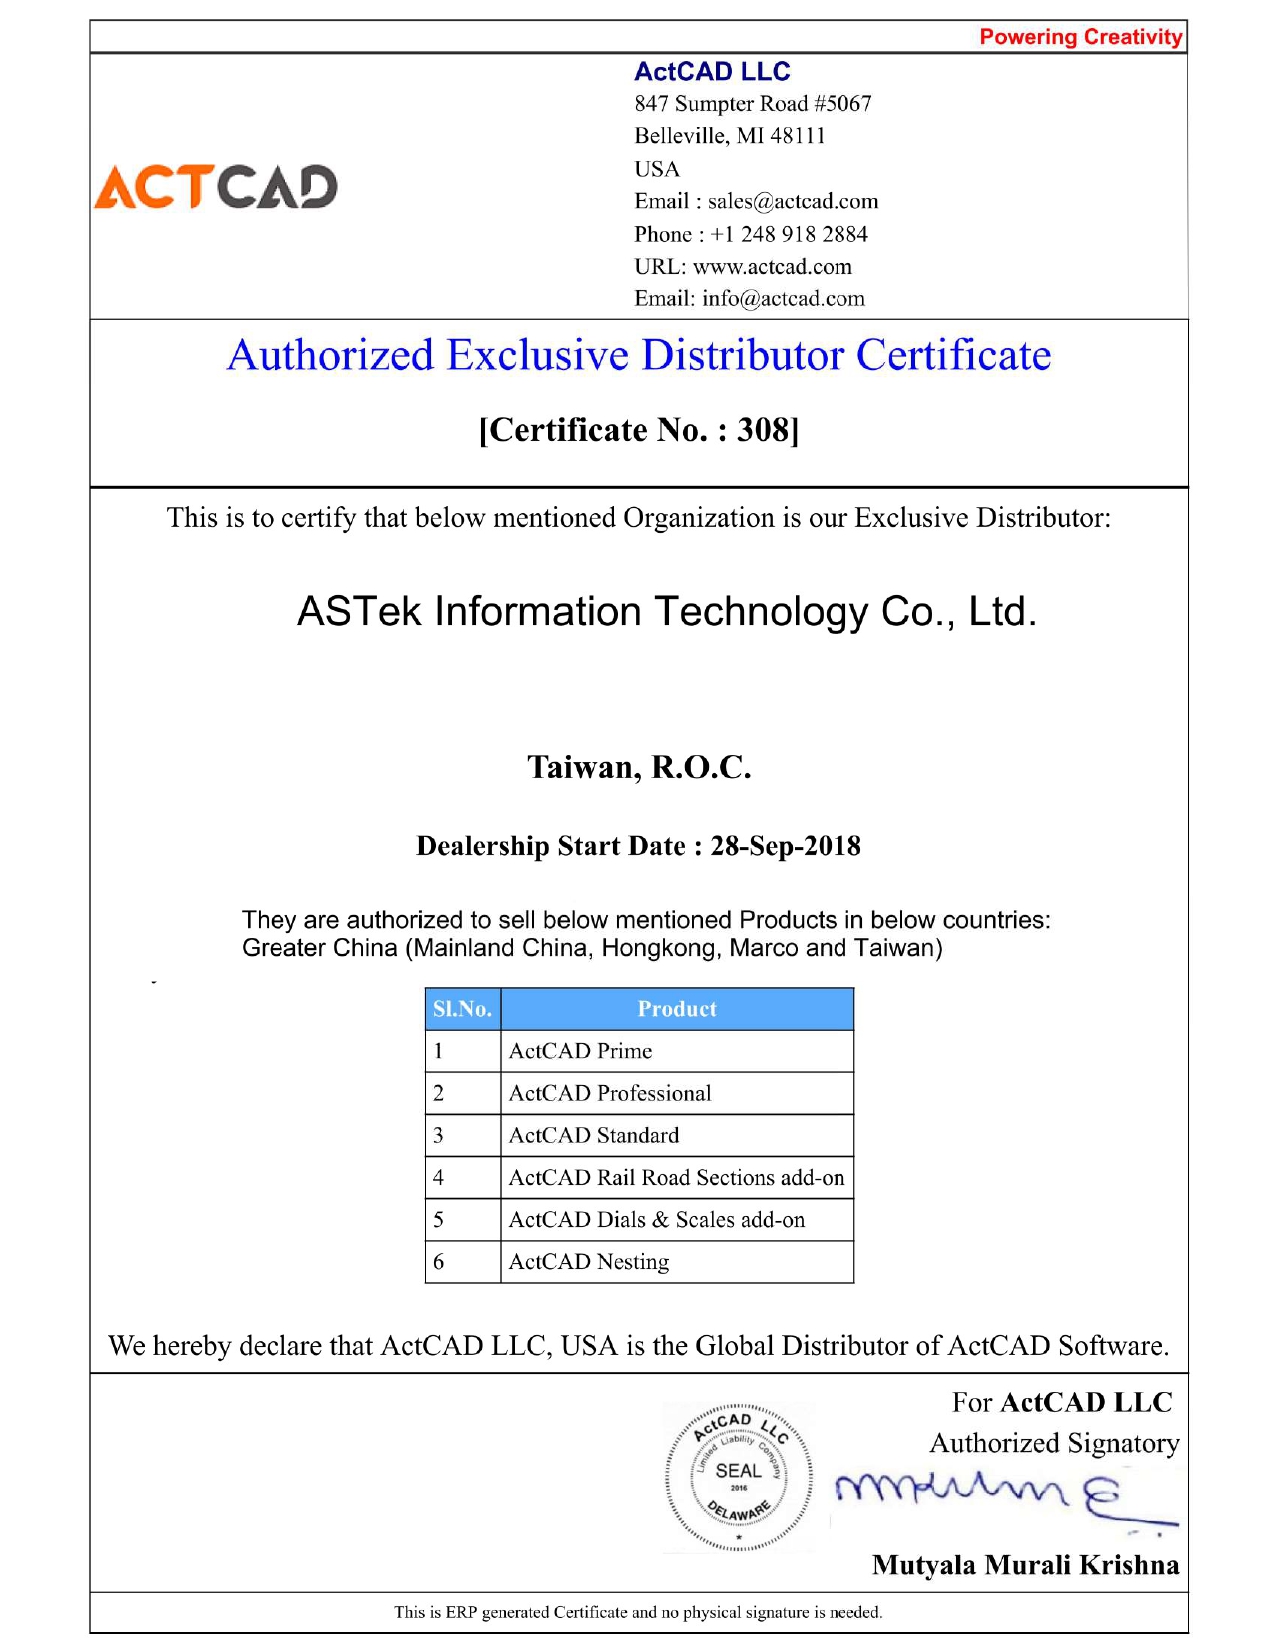 Authorization letter-ActCAD